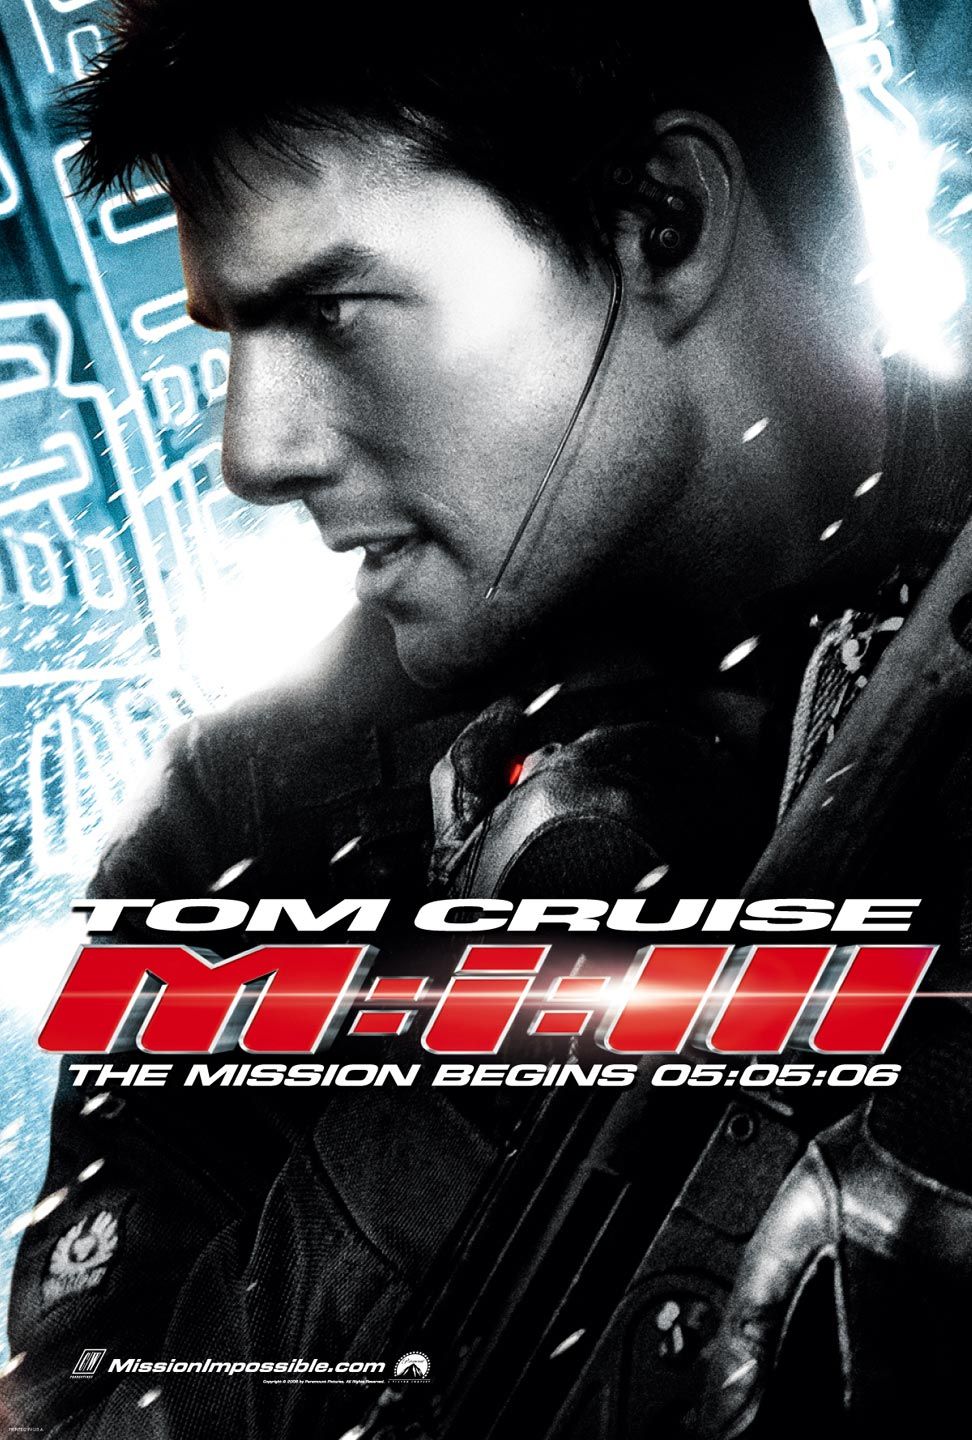 หนังน่าดู : Mission: Impossible III มิชชั่น:อิมพอสซิเบิ้ล III